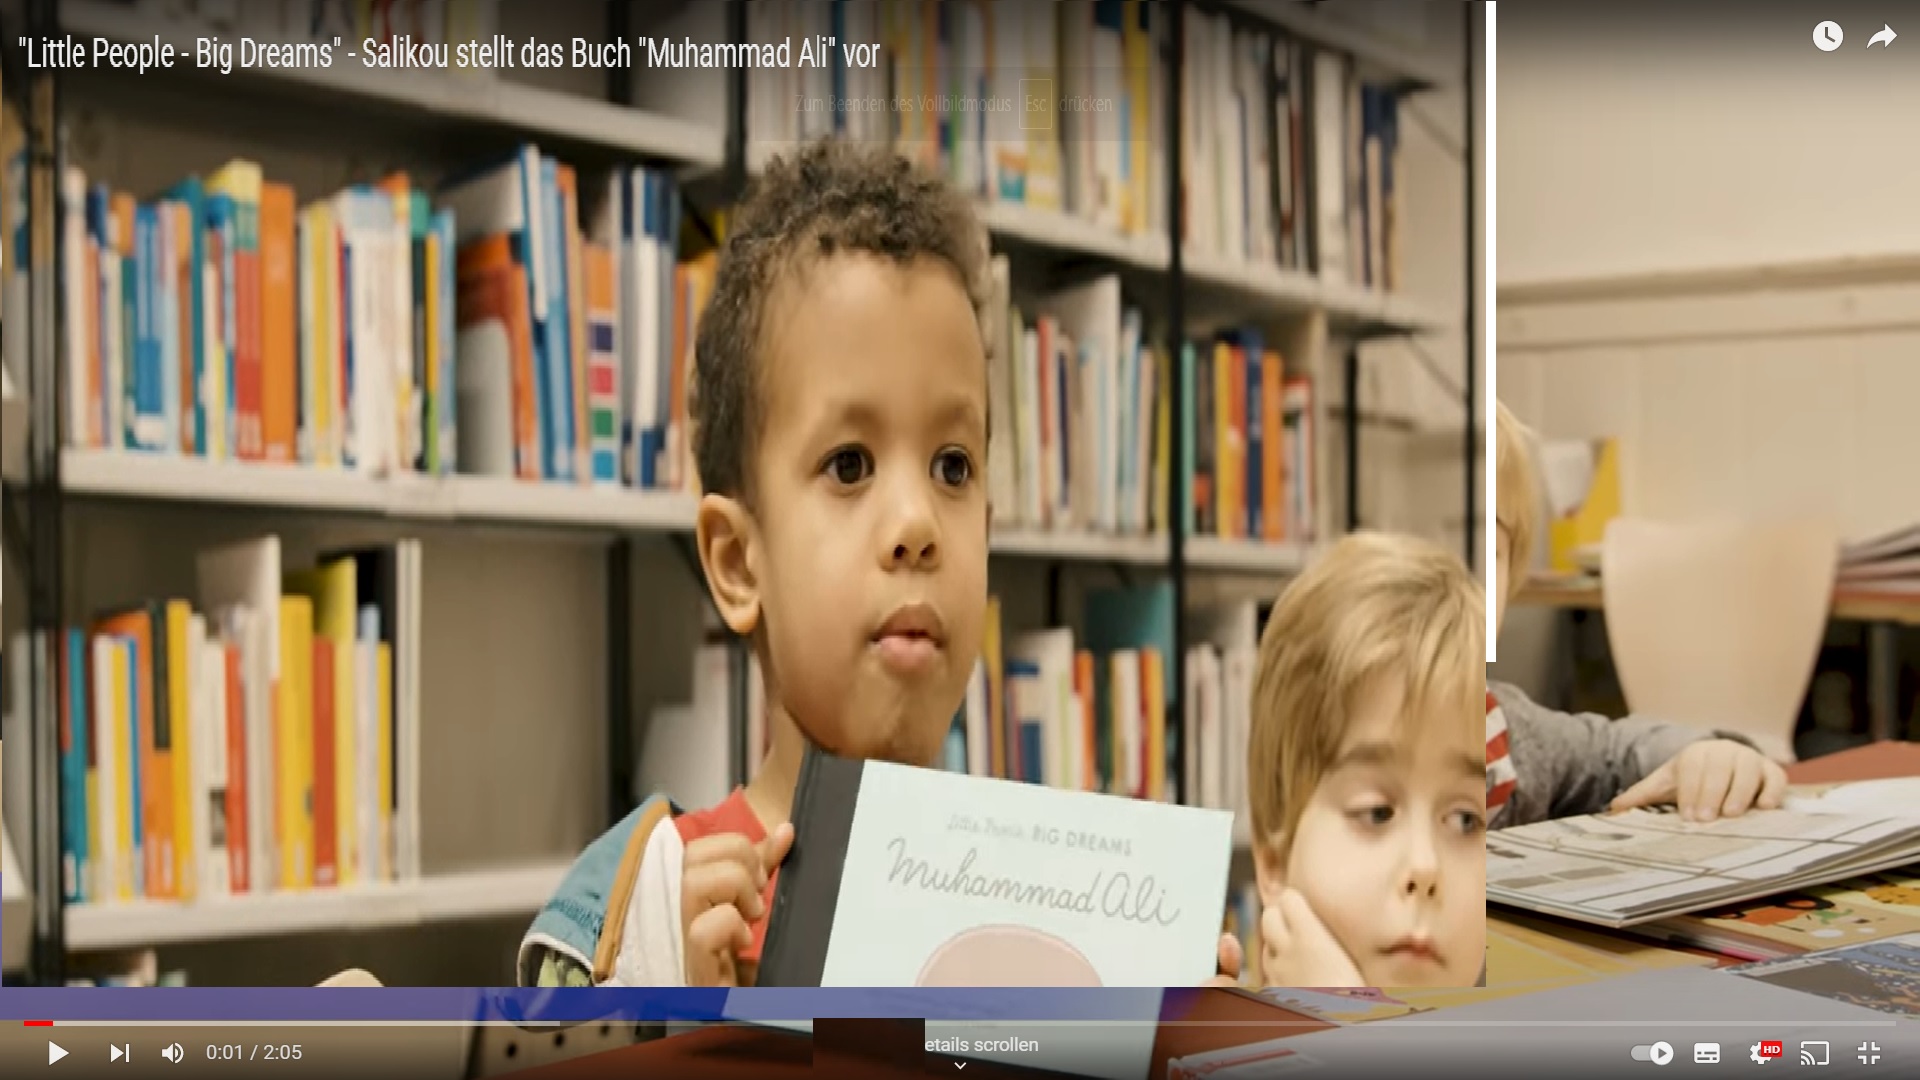 Ein schwarzer Junge steht vor einem Bücherregal und zeigt das Kinderbuch Muhammad Ali